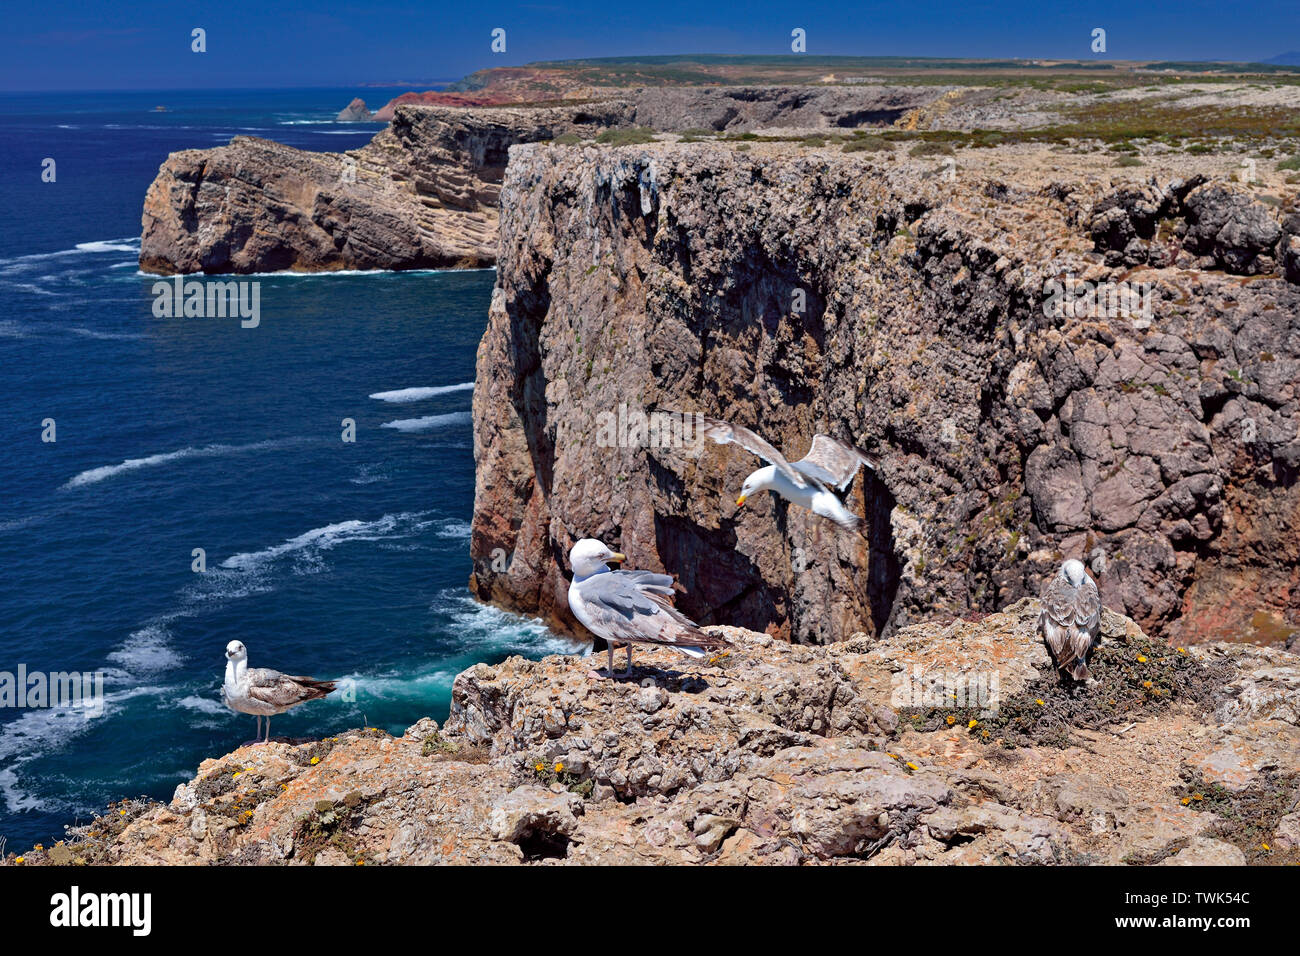 Vue de la côte sauvage rocheuse avec 4 mouettes ( Larus michahellis) assis sur les falaises Banque D'Images